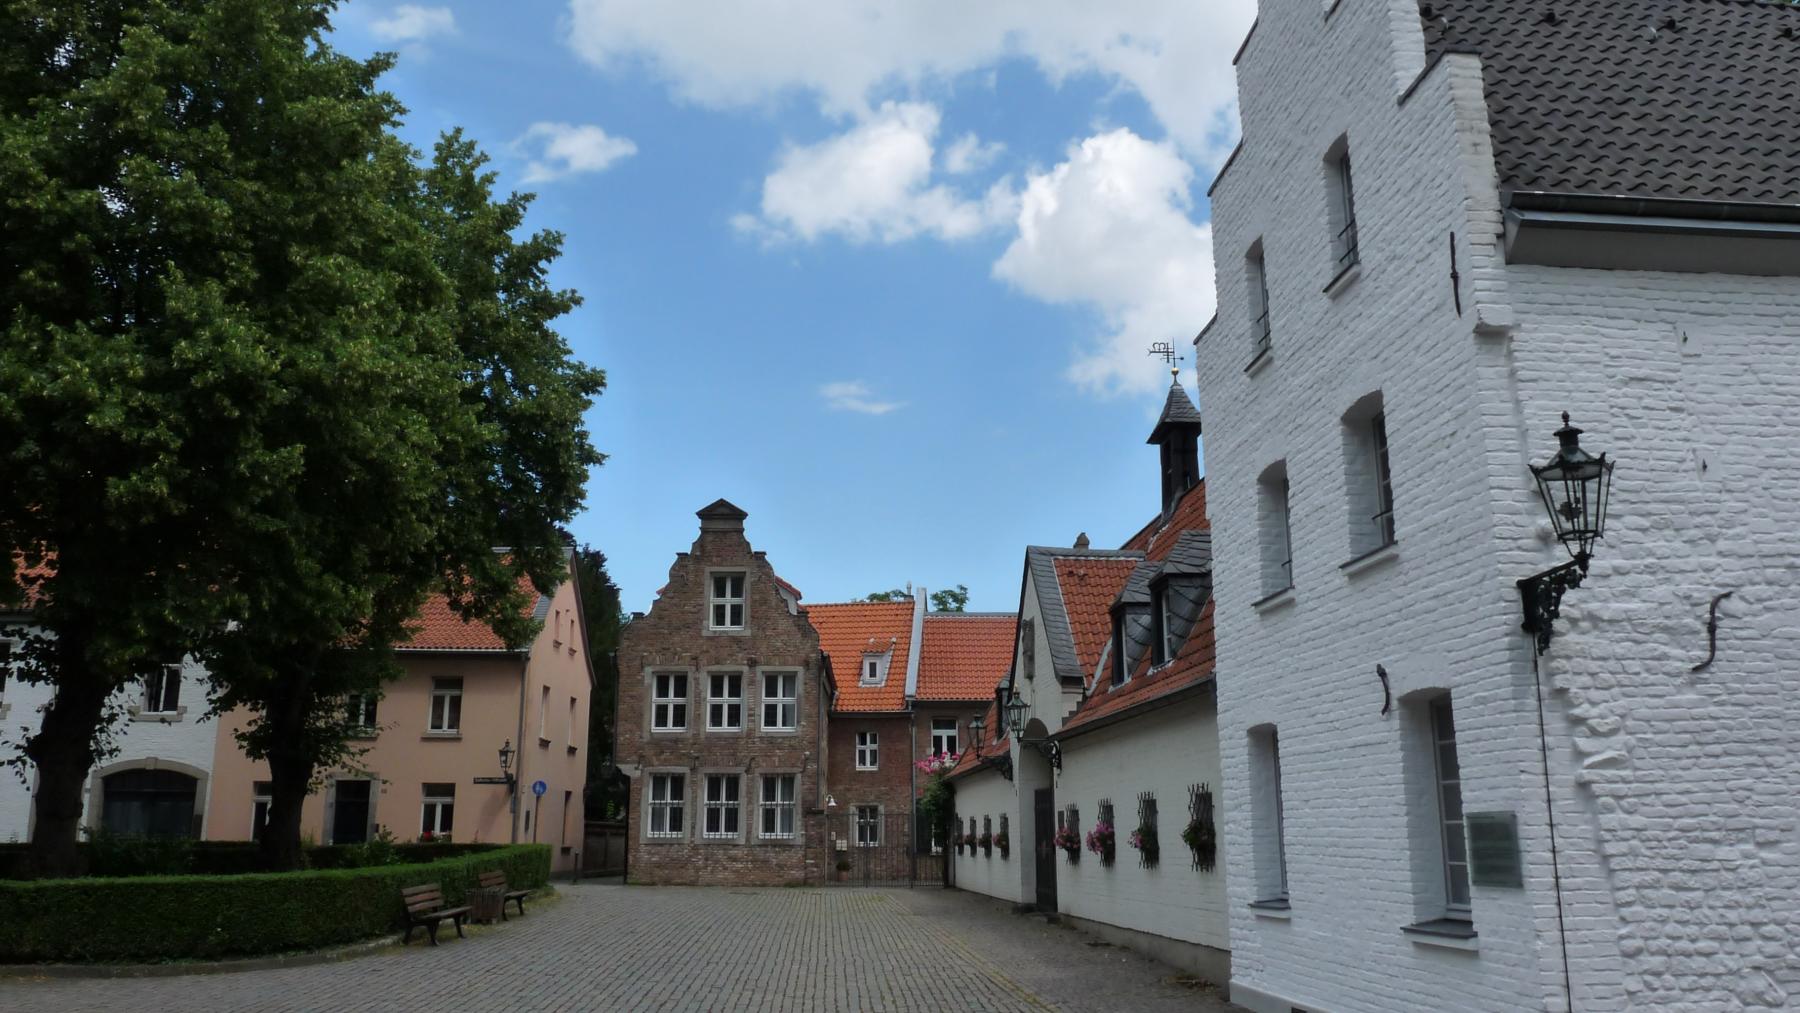 Historische Häuser in Düsseldorf Kaiserswerth, Quelle: Pixelio